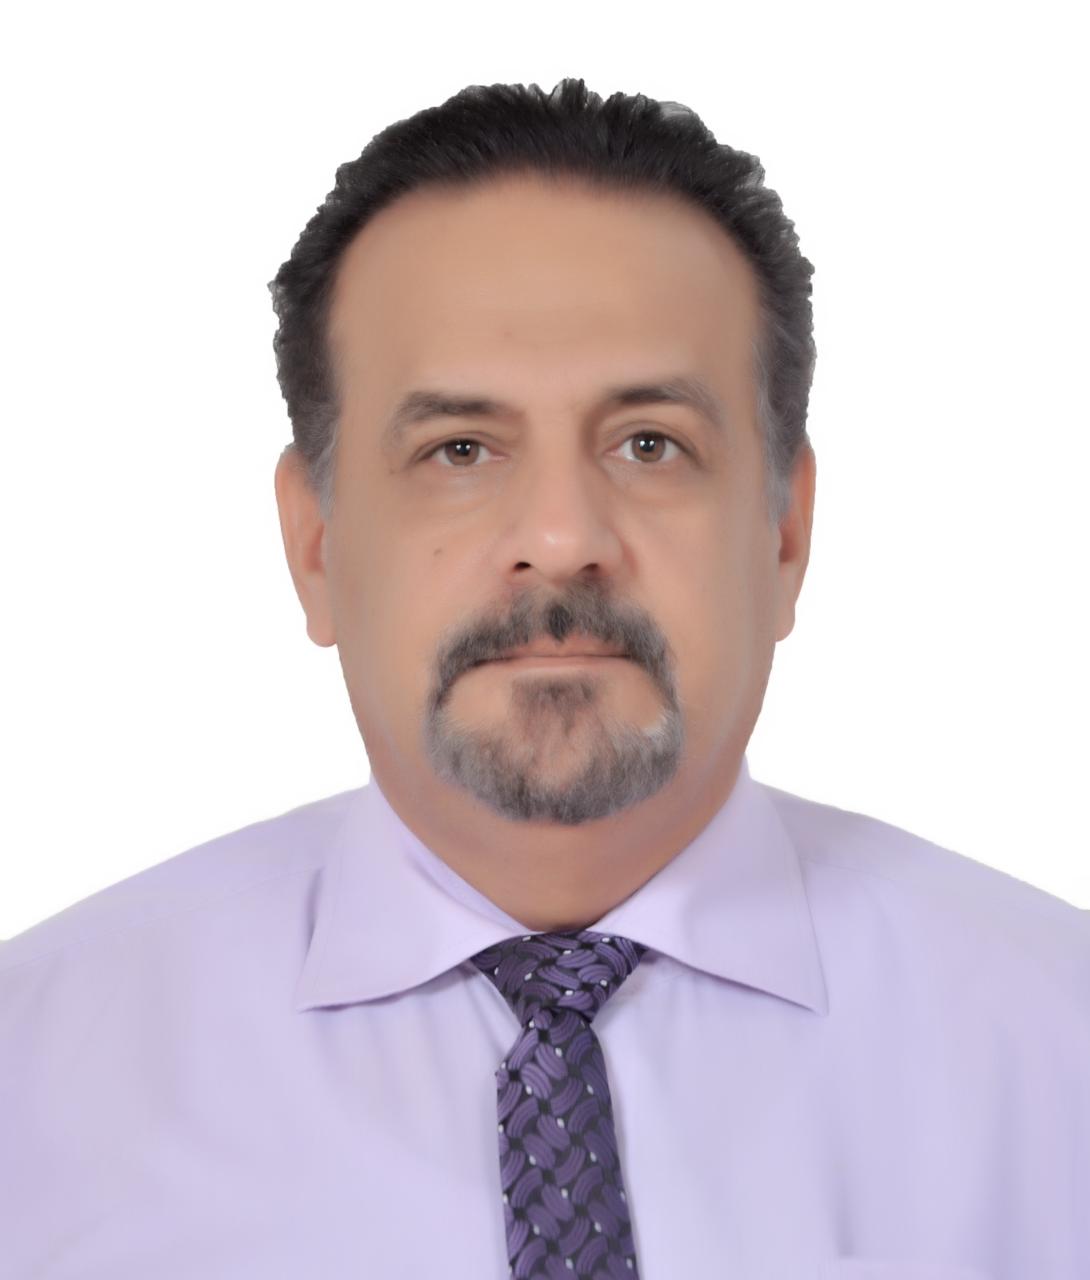 Majid Abdulhameed Ibrahim Abdulrasol Albassiri